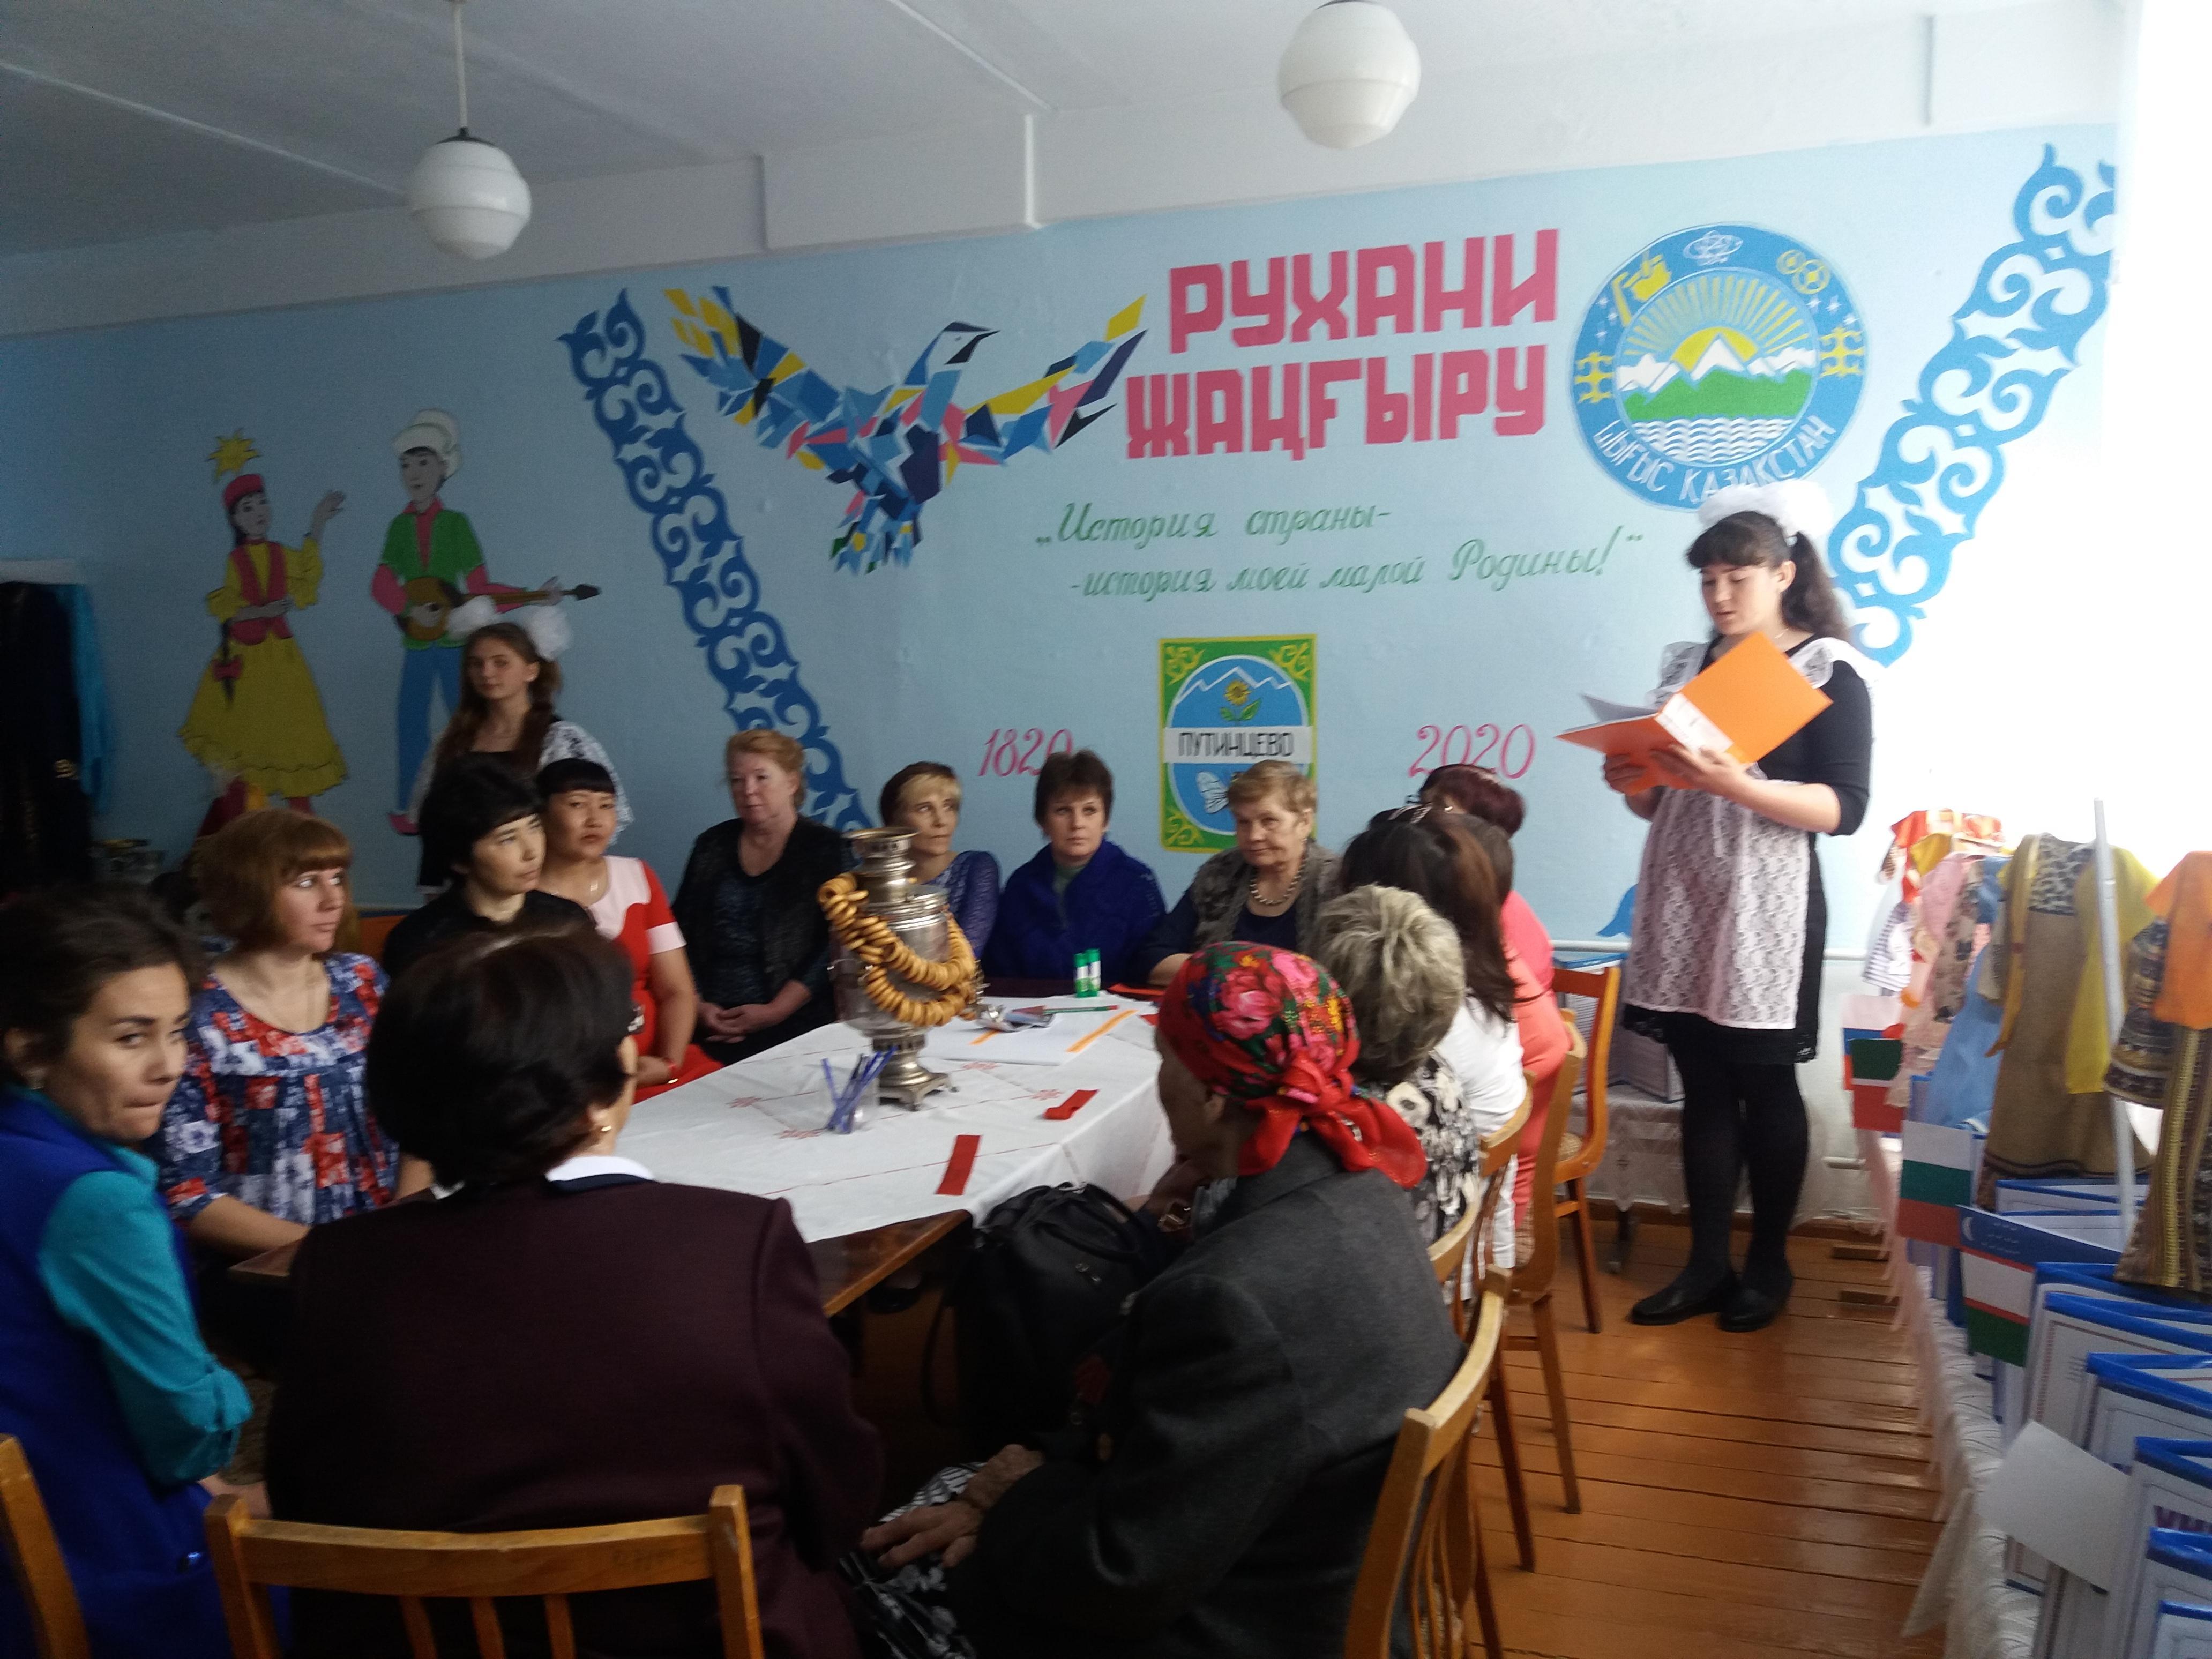 Открытие школьного краеведческого музея в КГУ "Путинцевская средняя школа"